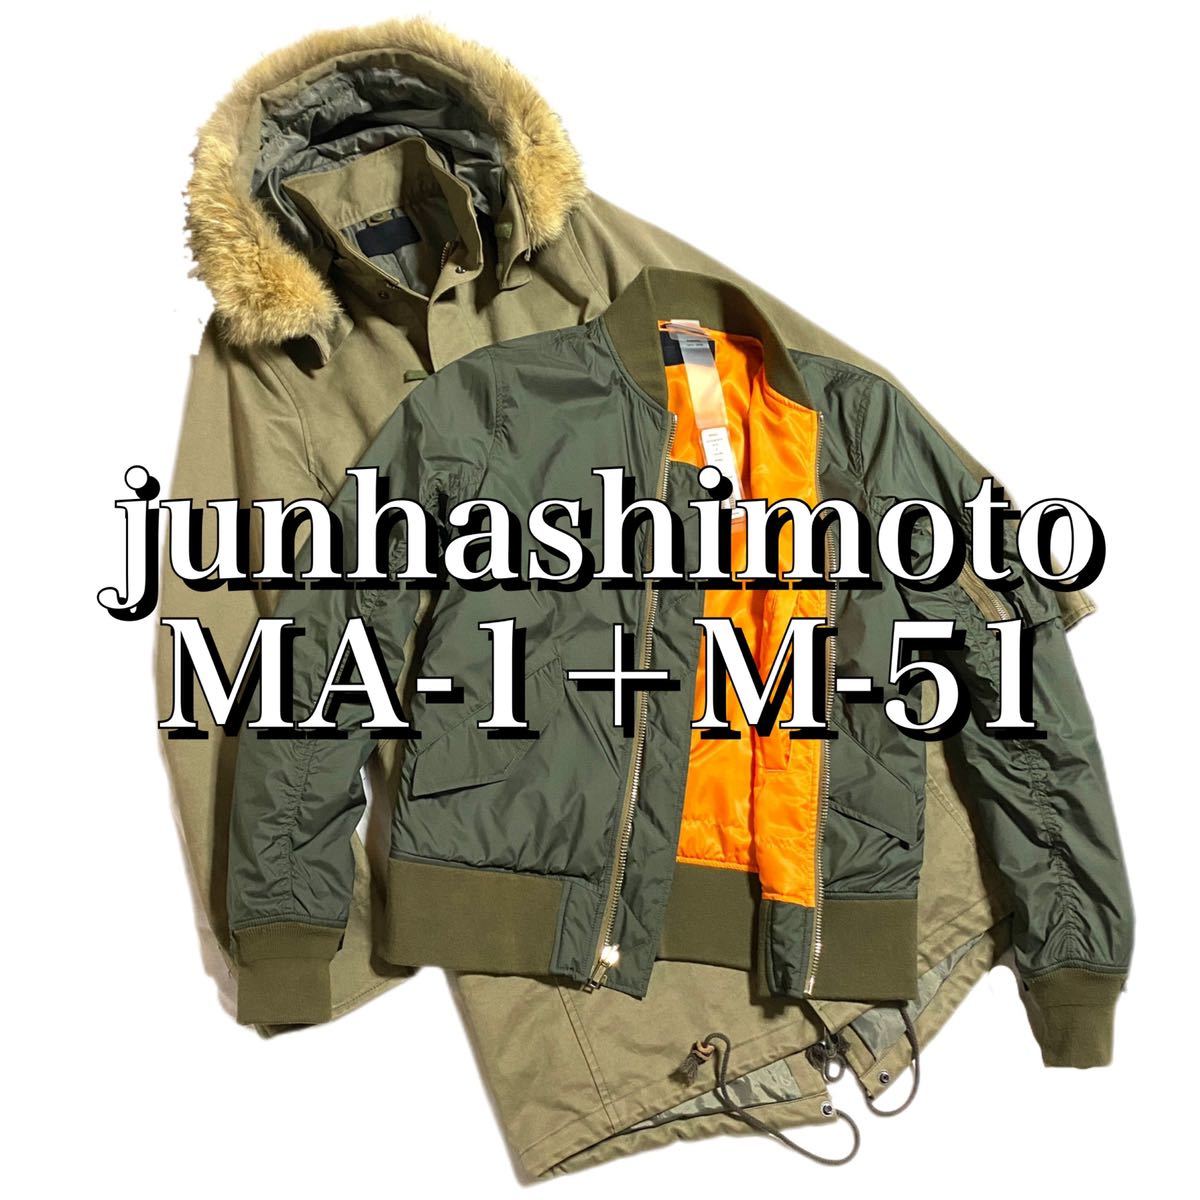 定価19万【junhashimoto】M-51+MA-1 3way モッズコート コヨーテファー size3 wjk AKM 1piu1uguale3 シンサレート搭載 WOOLRICH EMMETI